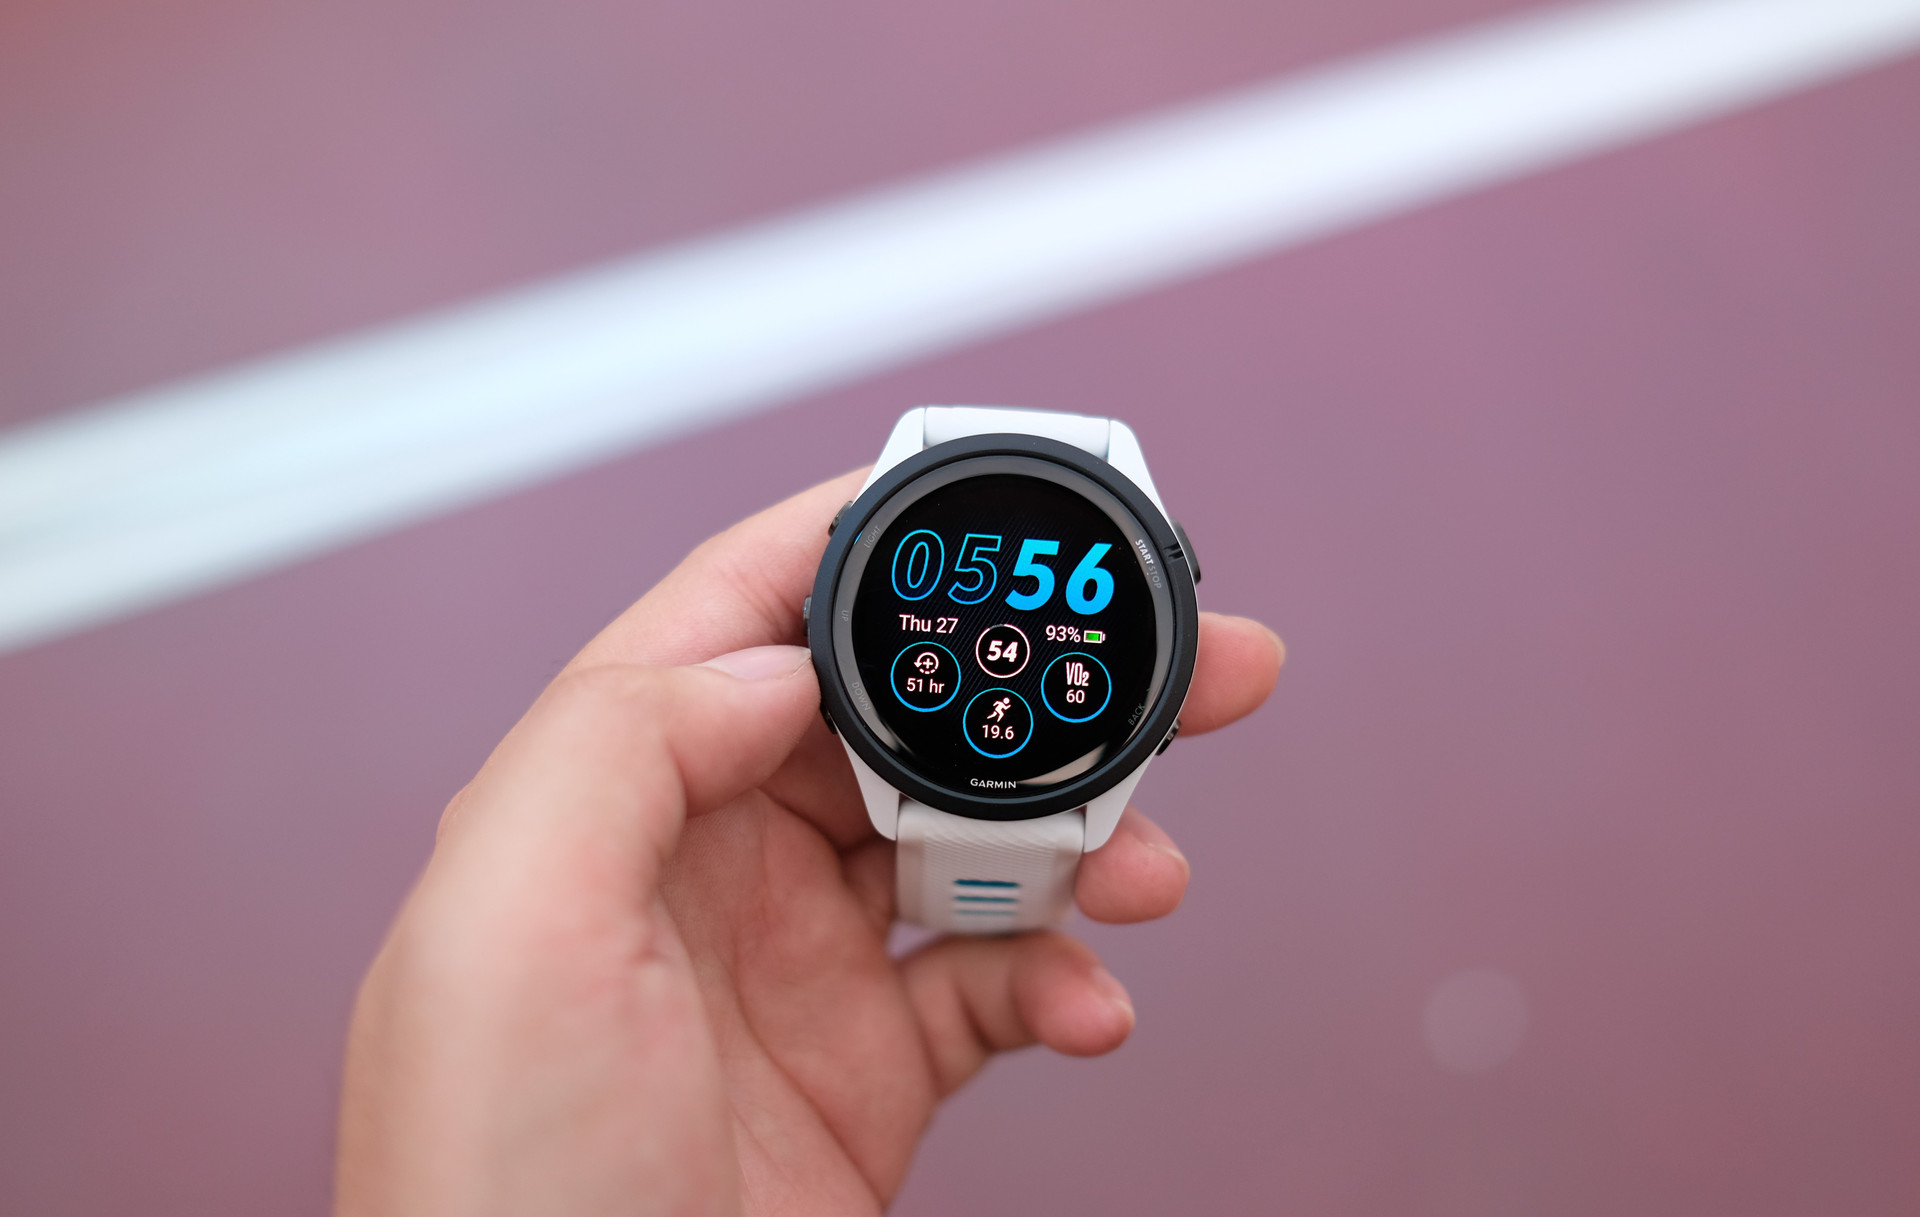 Garmin ra mắt đồng hồ chạy bộ GPS trang bị màn hình AMOLED đầu tiên thế giới, giá từ 11,7 triệu đồng - Ảnh 2.